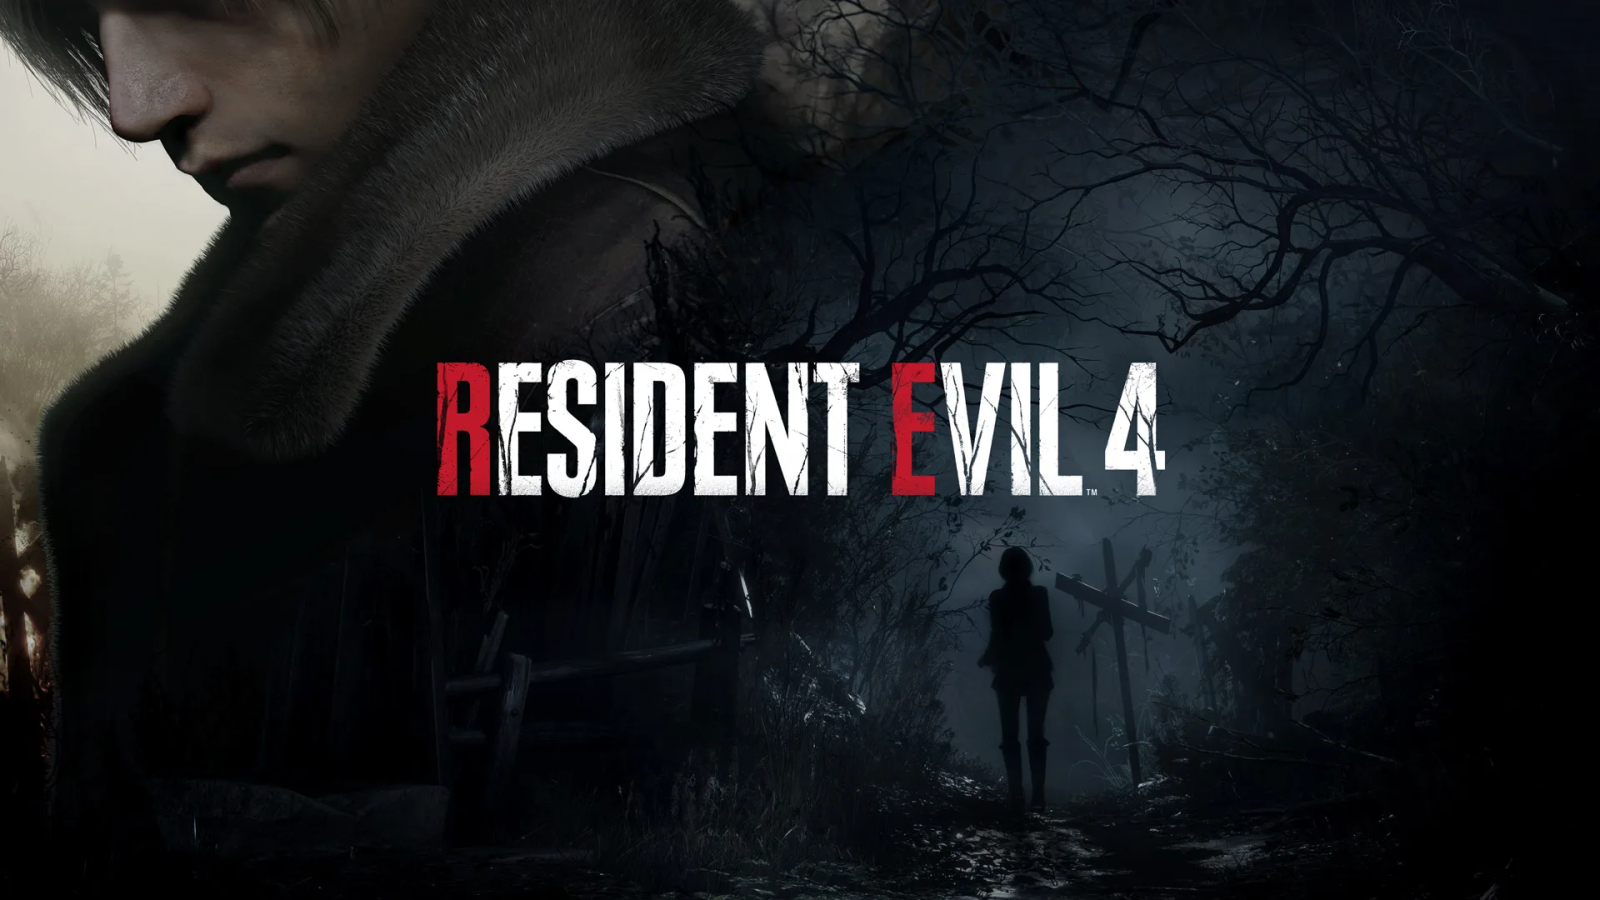 Resident Evil 4 - Remake (Русская озвучка) | ТРЕЙЛЕР